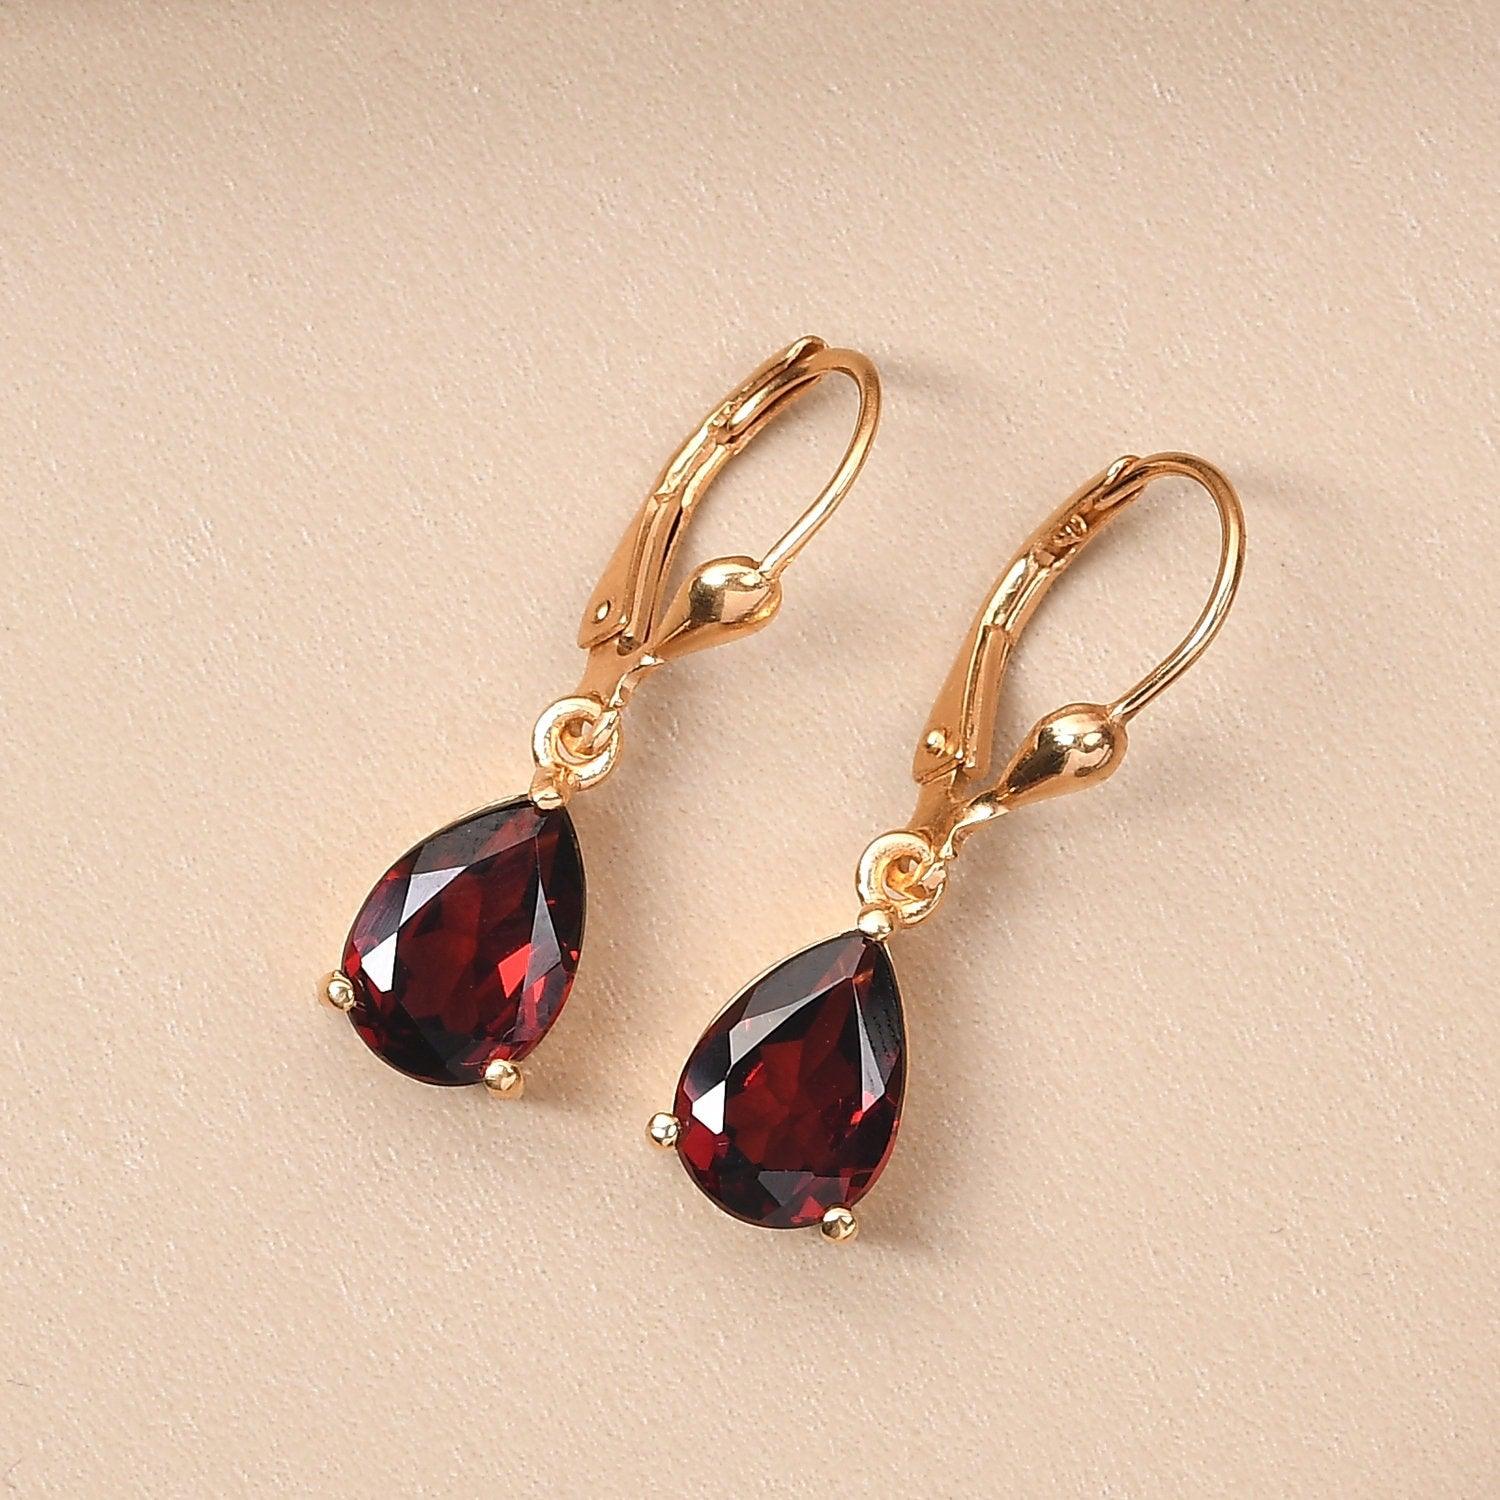 Red Garnet dangle earrings , January birthstone , 925 Sterling Silver , Garnet Lever back Earring, Teardrop Earrings by Inspiring Jewellery - Inspiring Jewellery